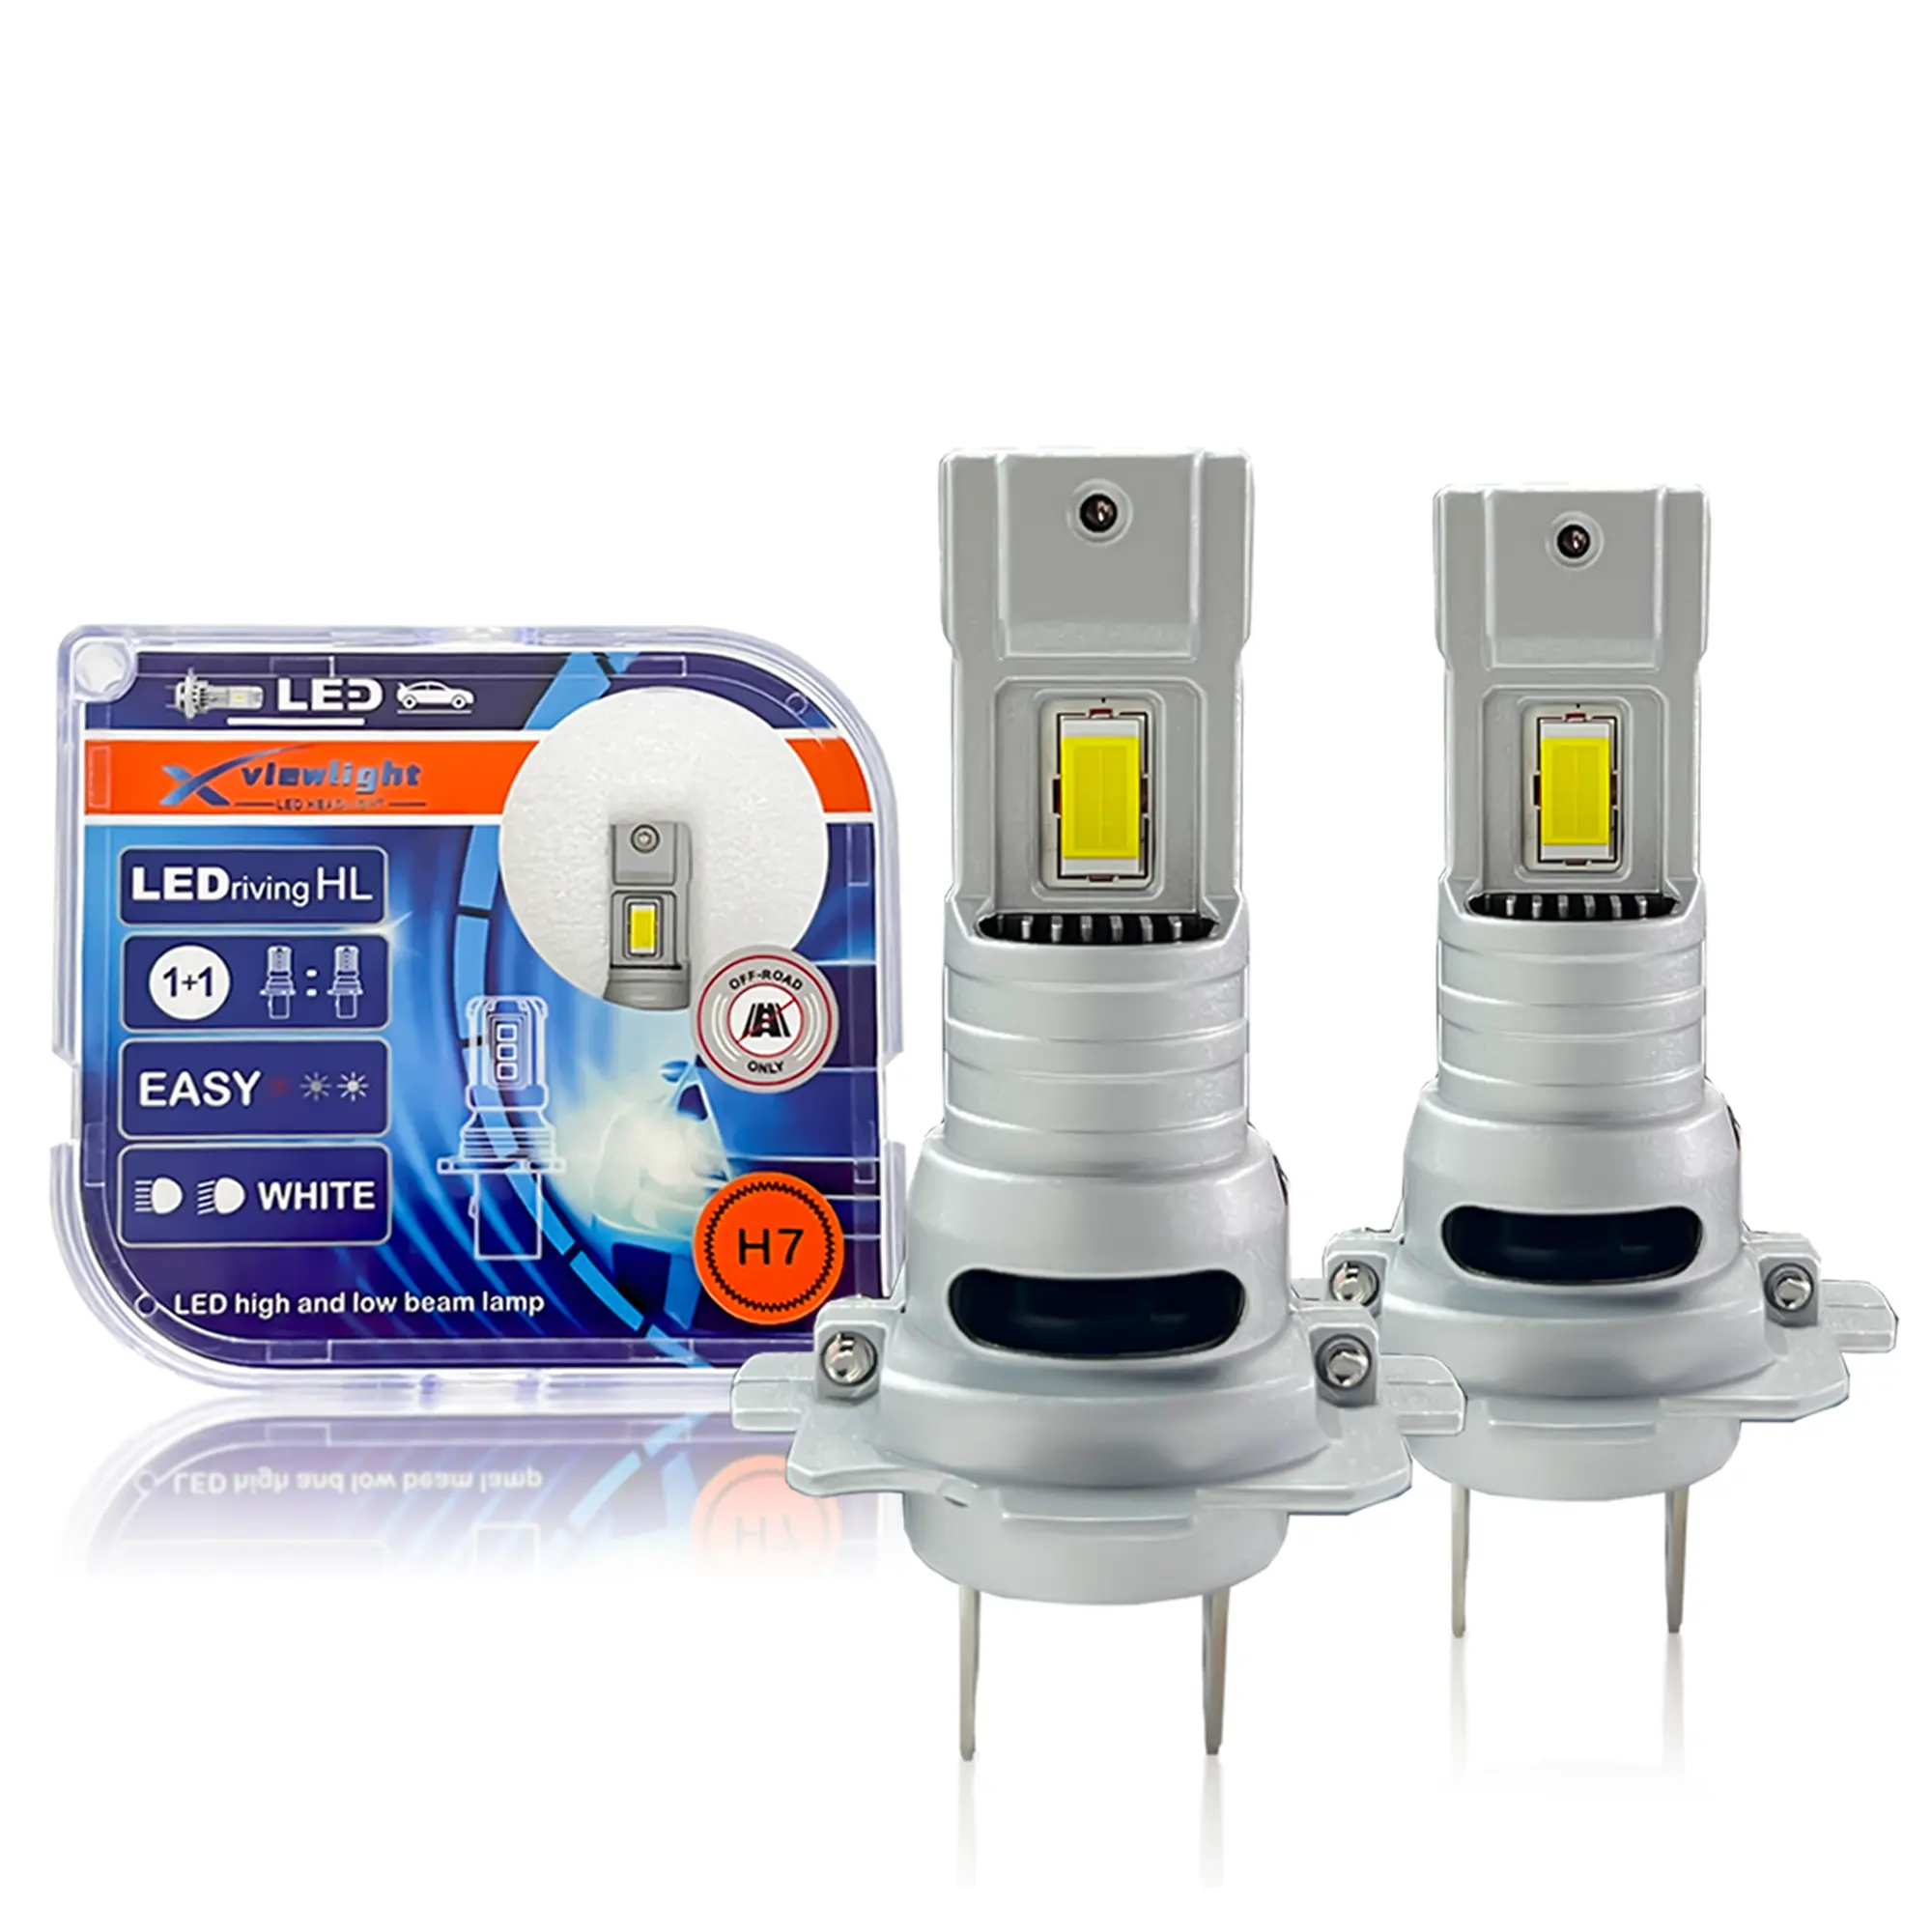 Plug and play TP8 60W Led Car Light Mini Size Fan H11 H7 LED Headlight Bulb 9005 9006 9012 H4 CSP 3570 Car LED Light Fog Lamps